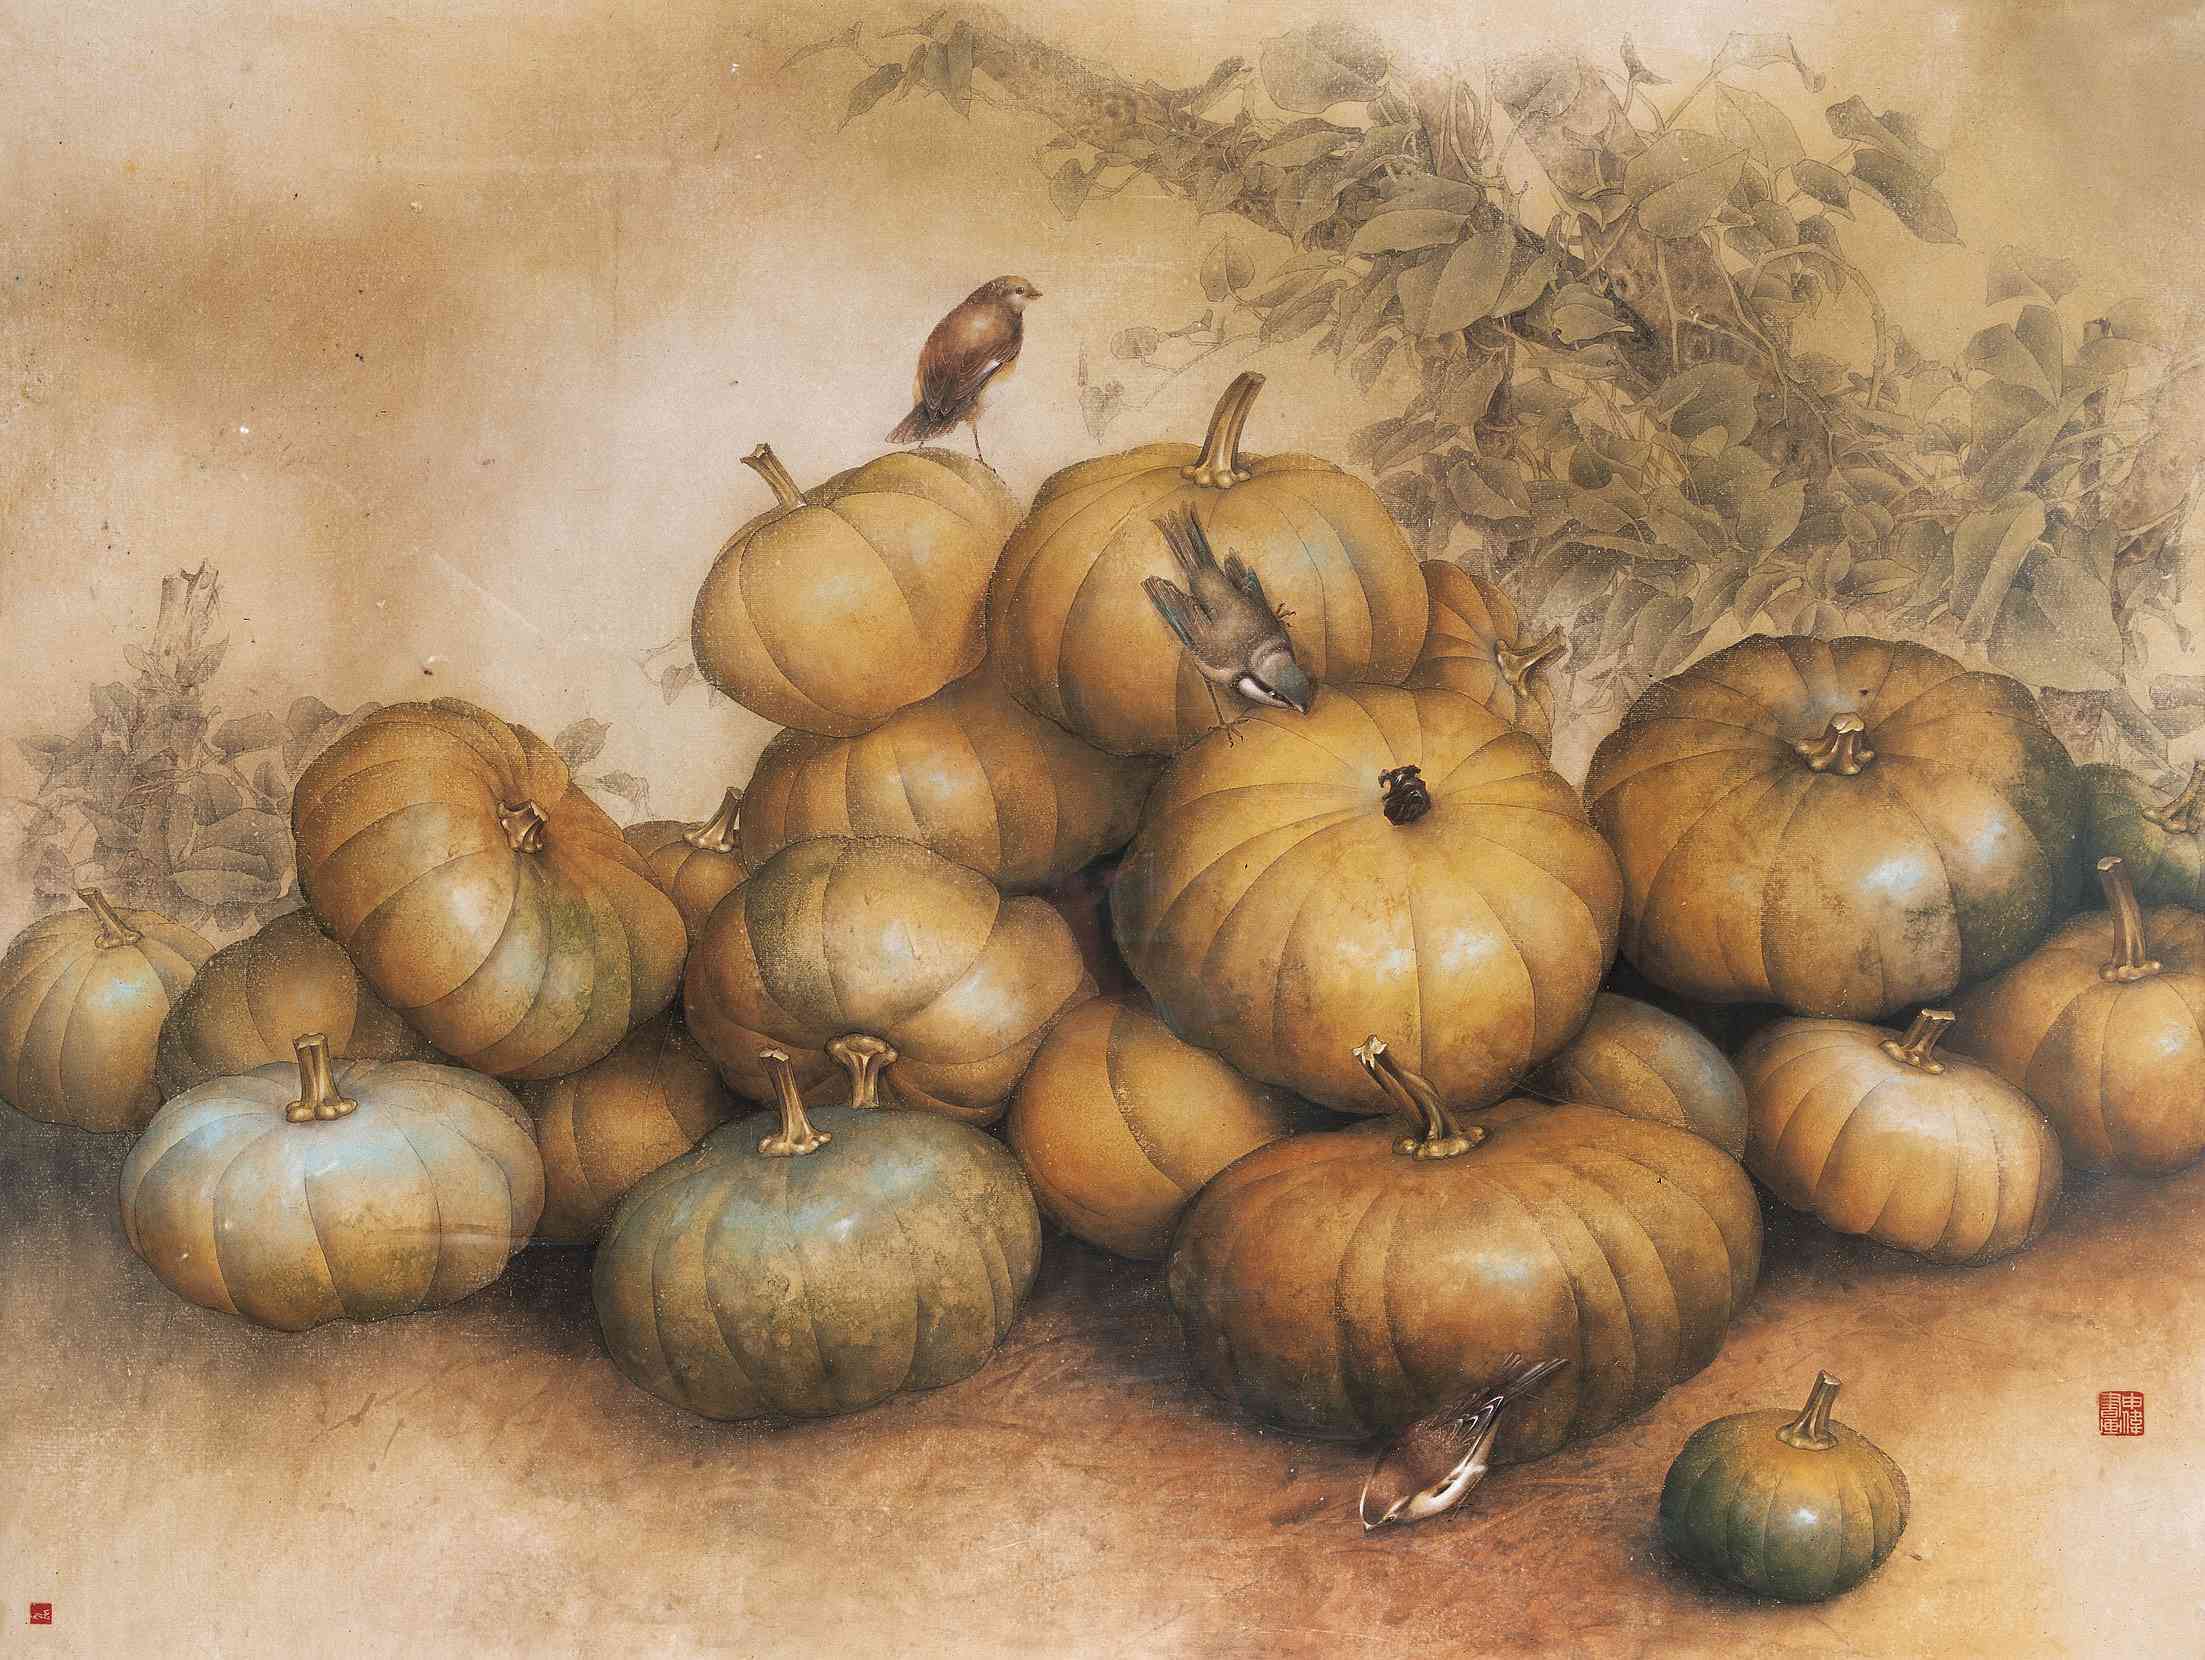 南瓜尺寸:90×119cm钤印:申伟画印传统的工艺花鸟从题材内容到形式